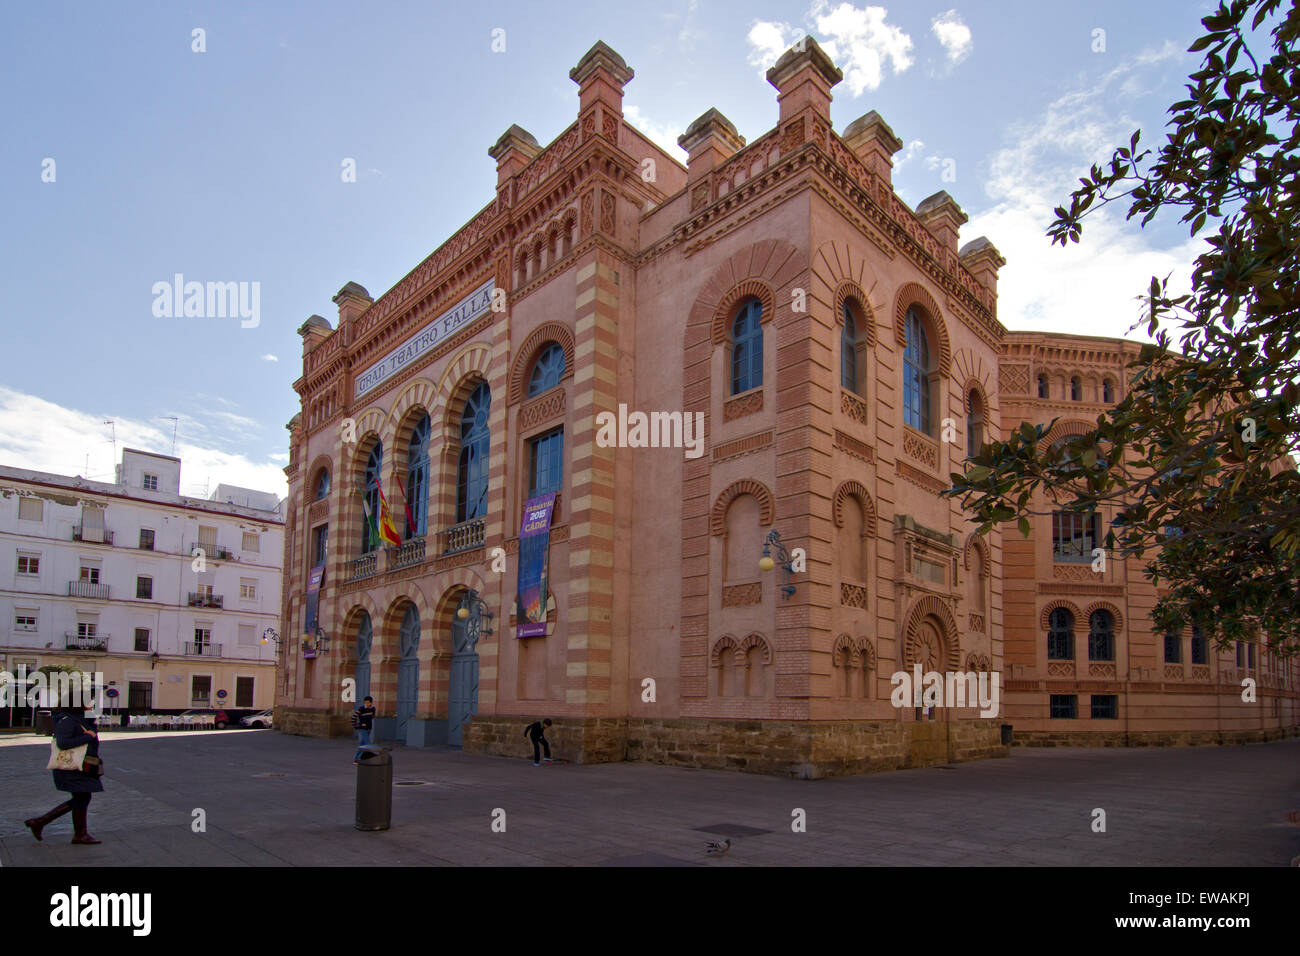 The Gran Teatro Falla. Theater in Cadiz, Spain. Stock Photo